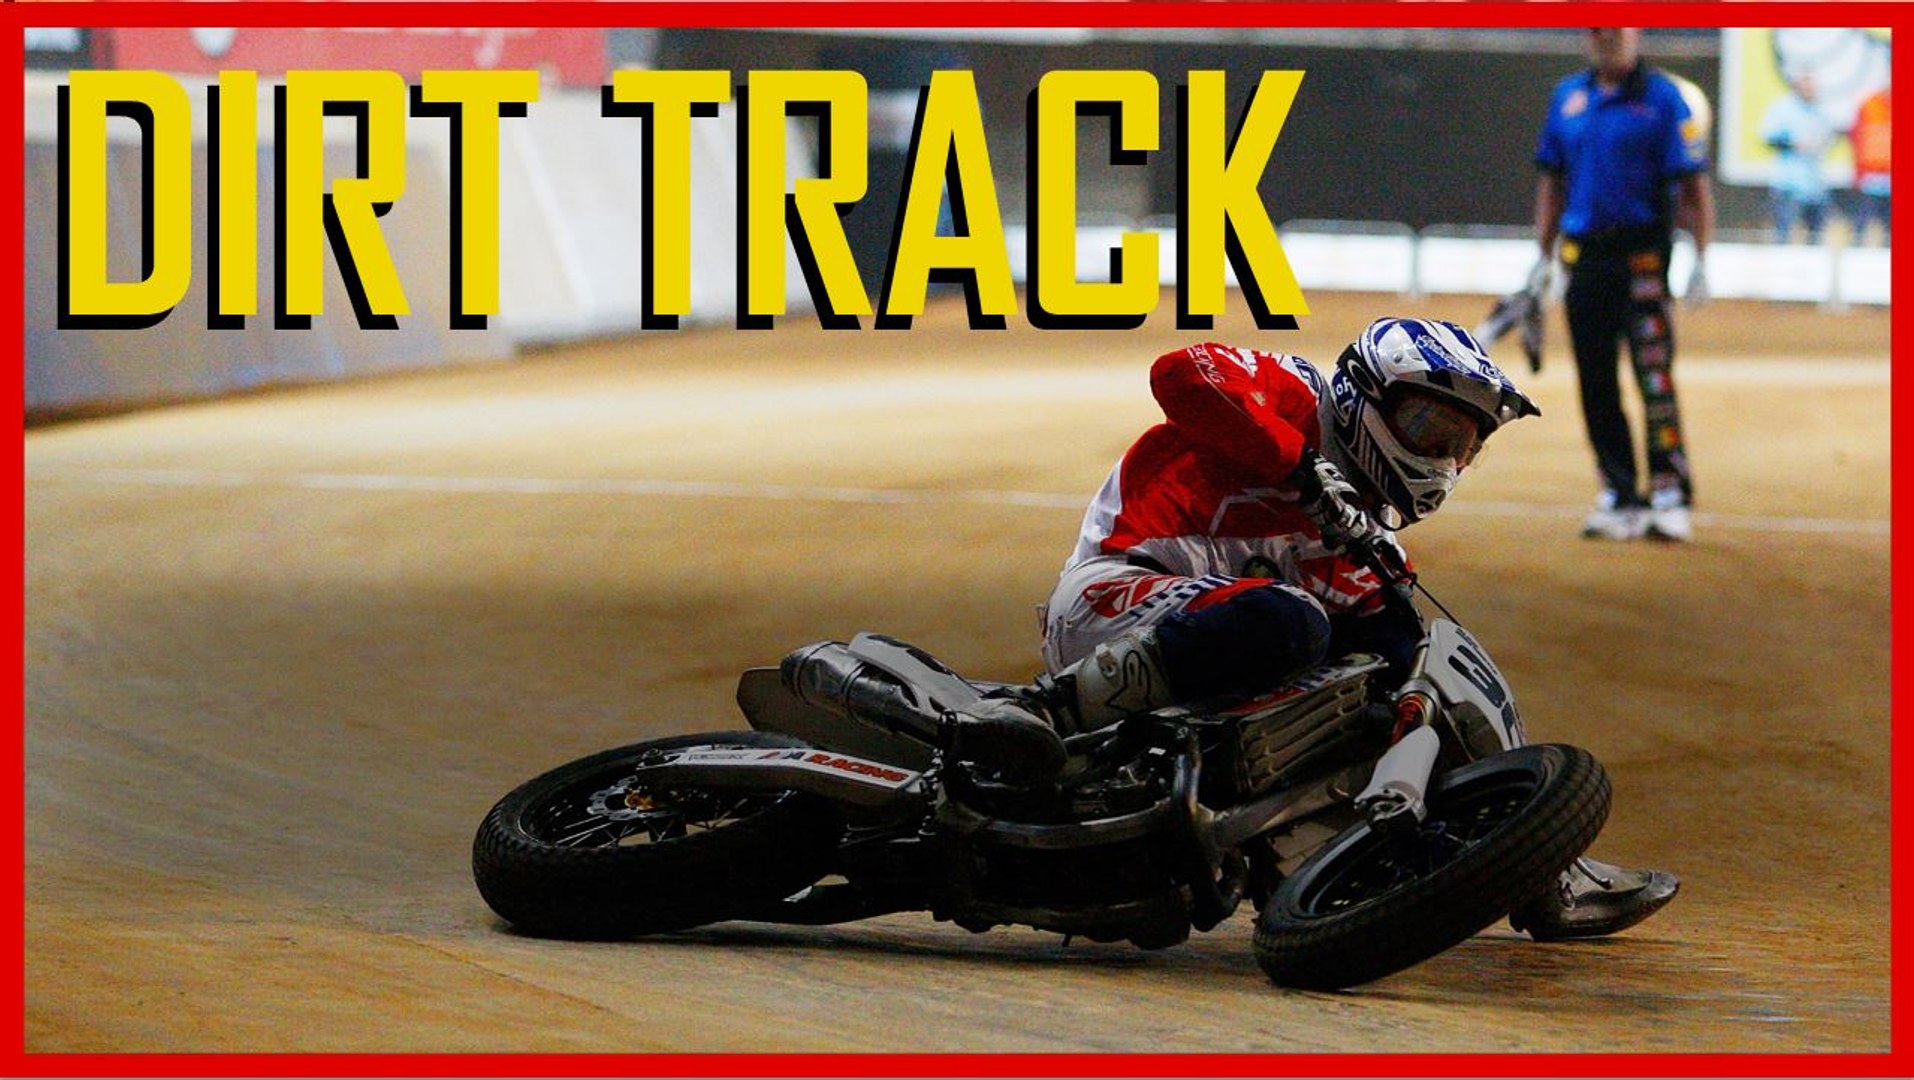 Dirt Track moto : Une vidéo où tout part de travers ! - Vidéo Dailymotion